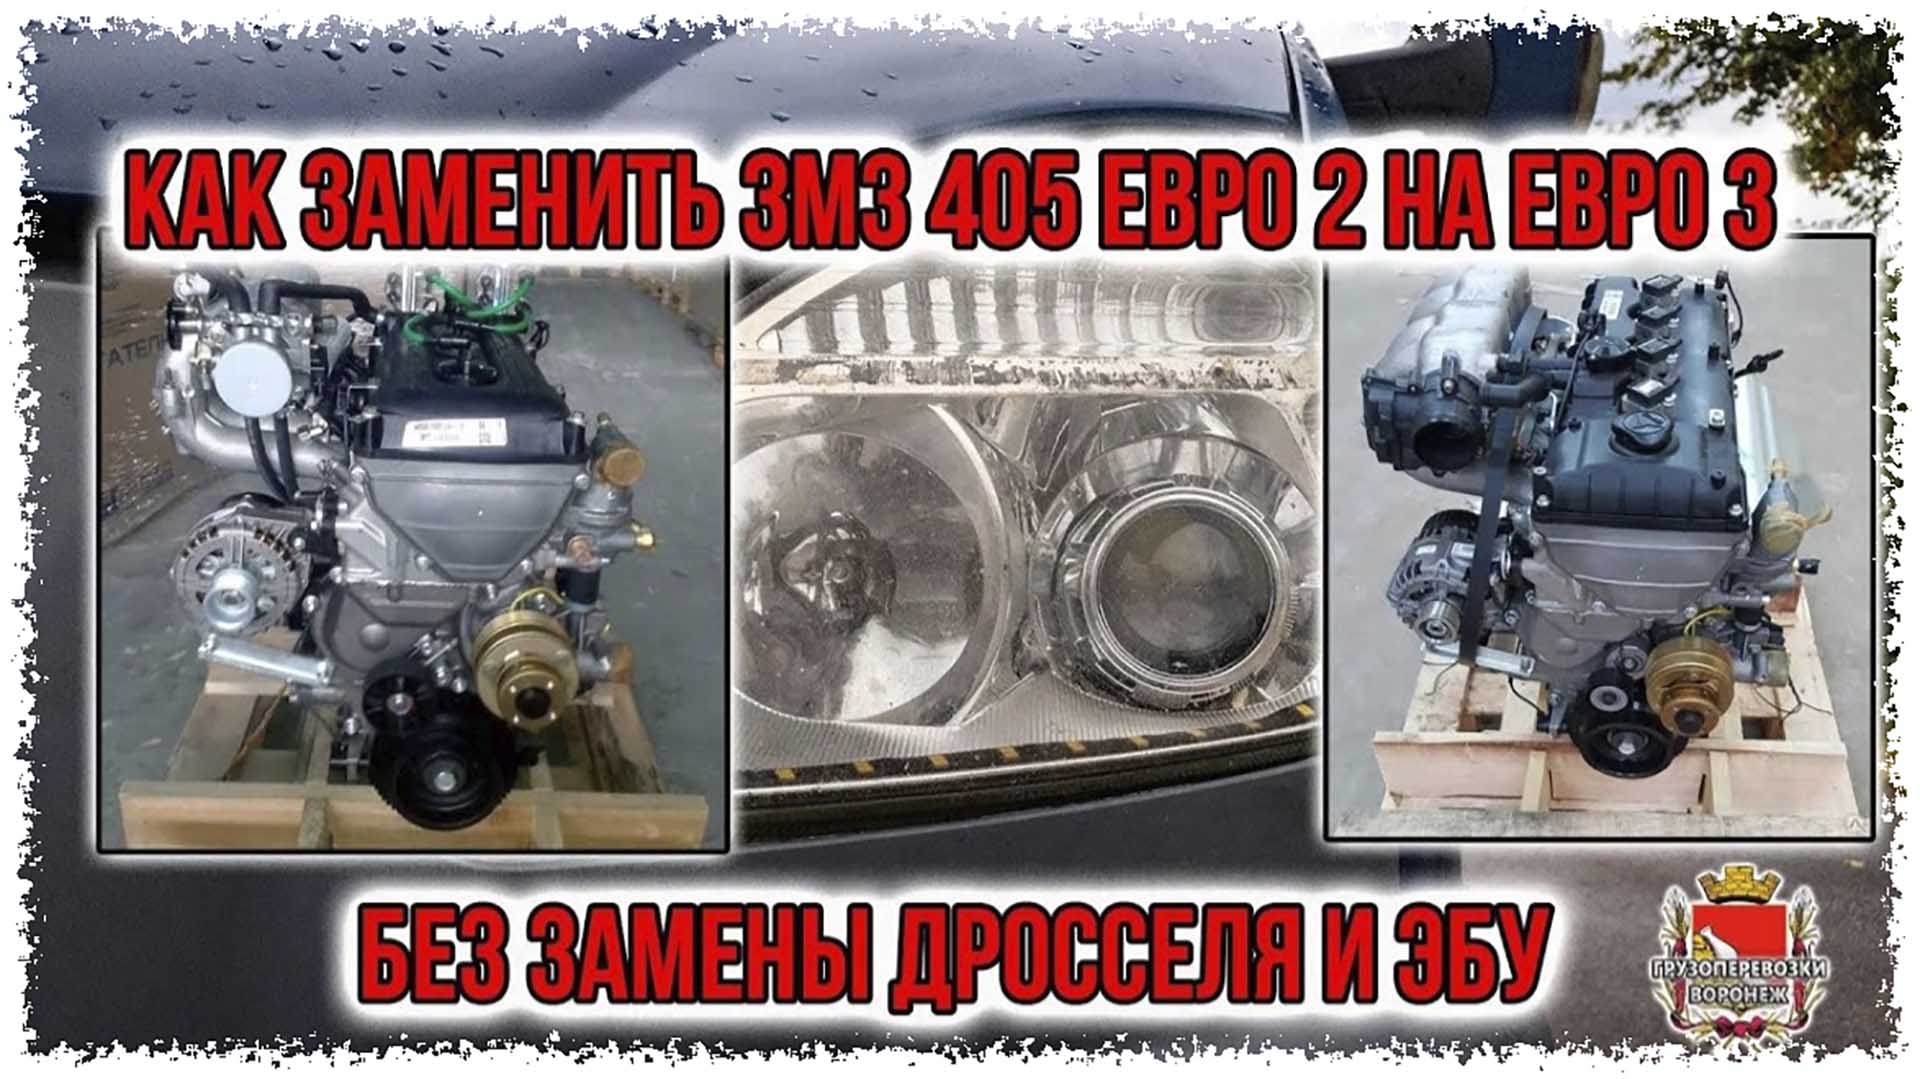 Как заменить двигатель ЗМЗ 405 евро 2 на евро 3